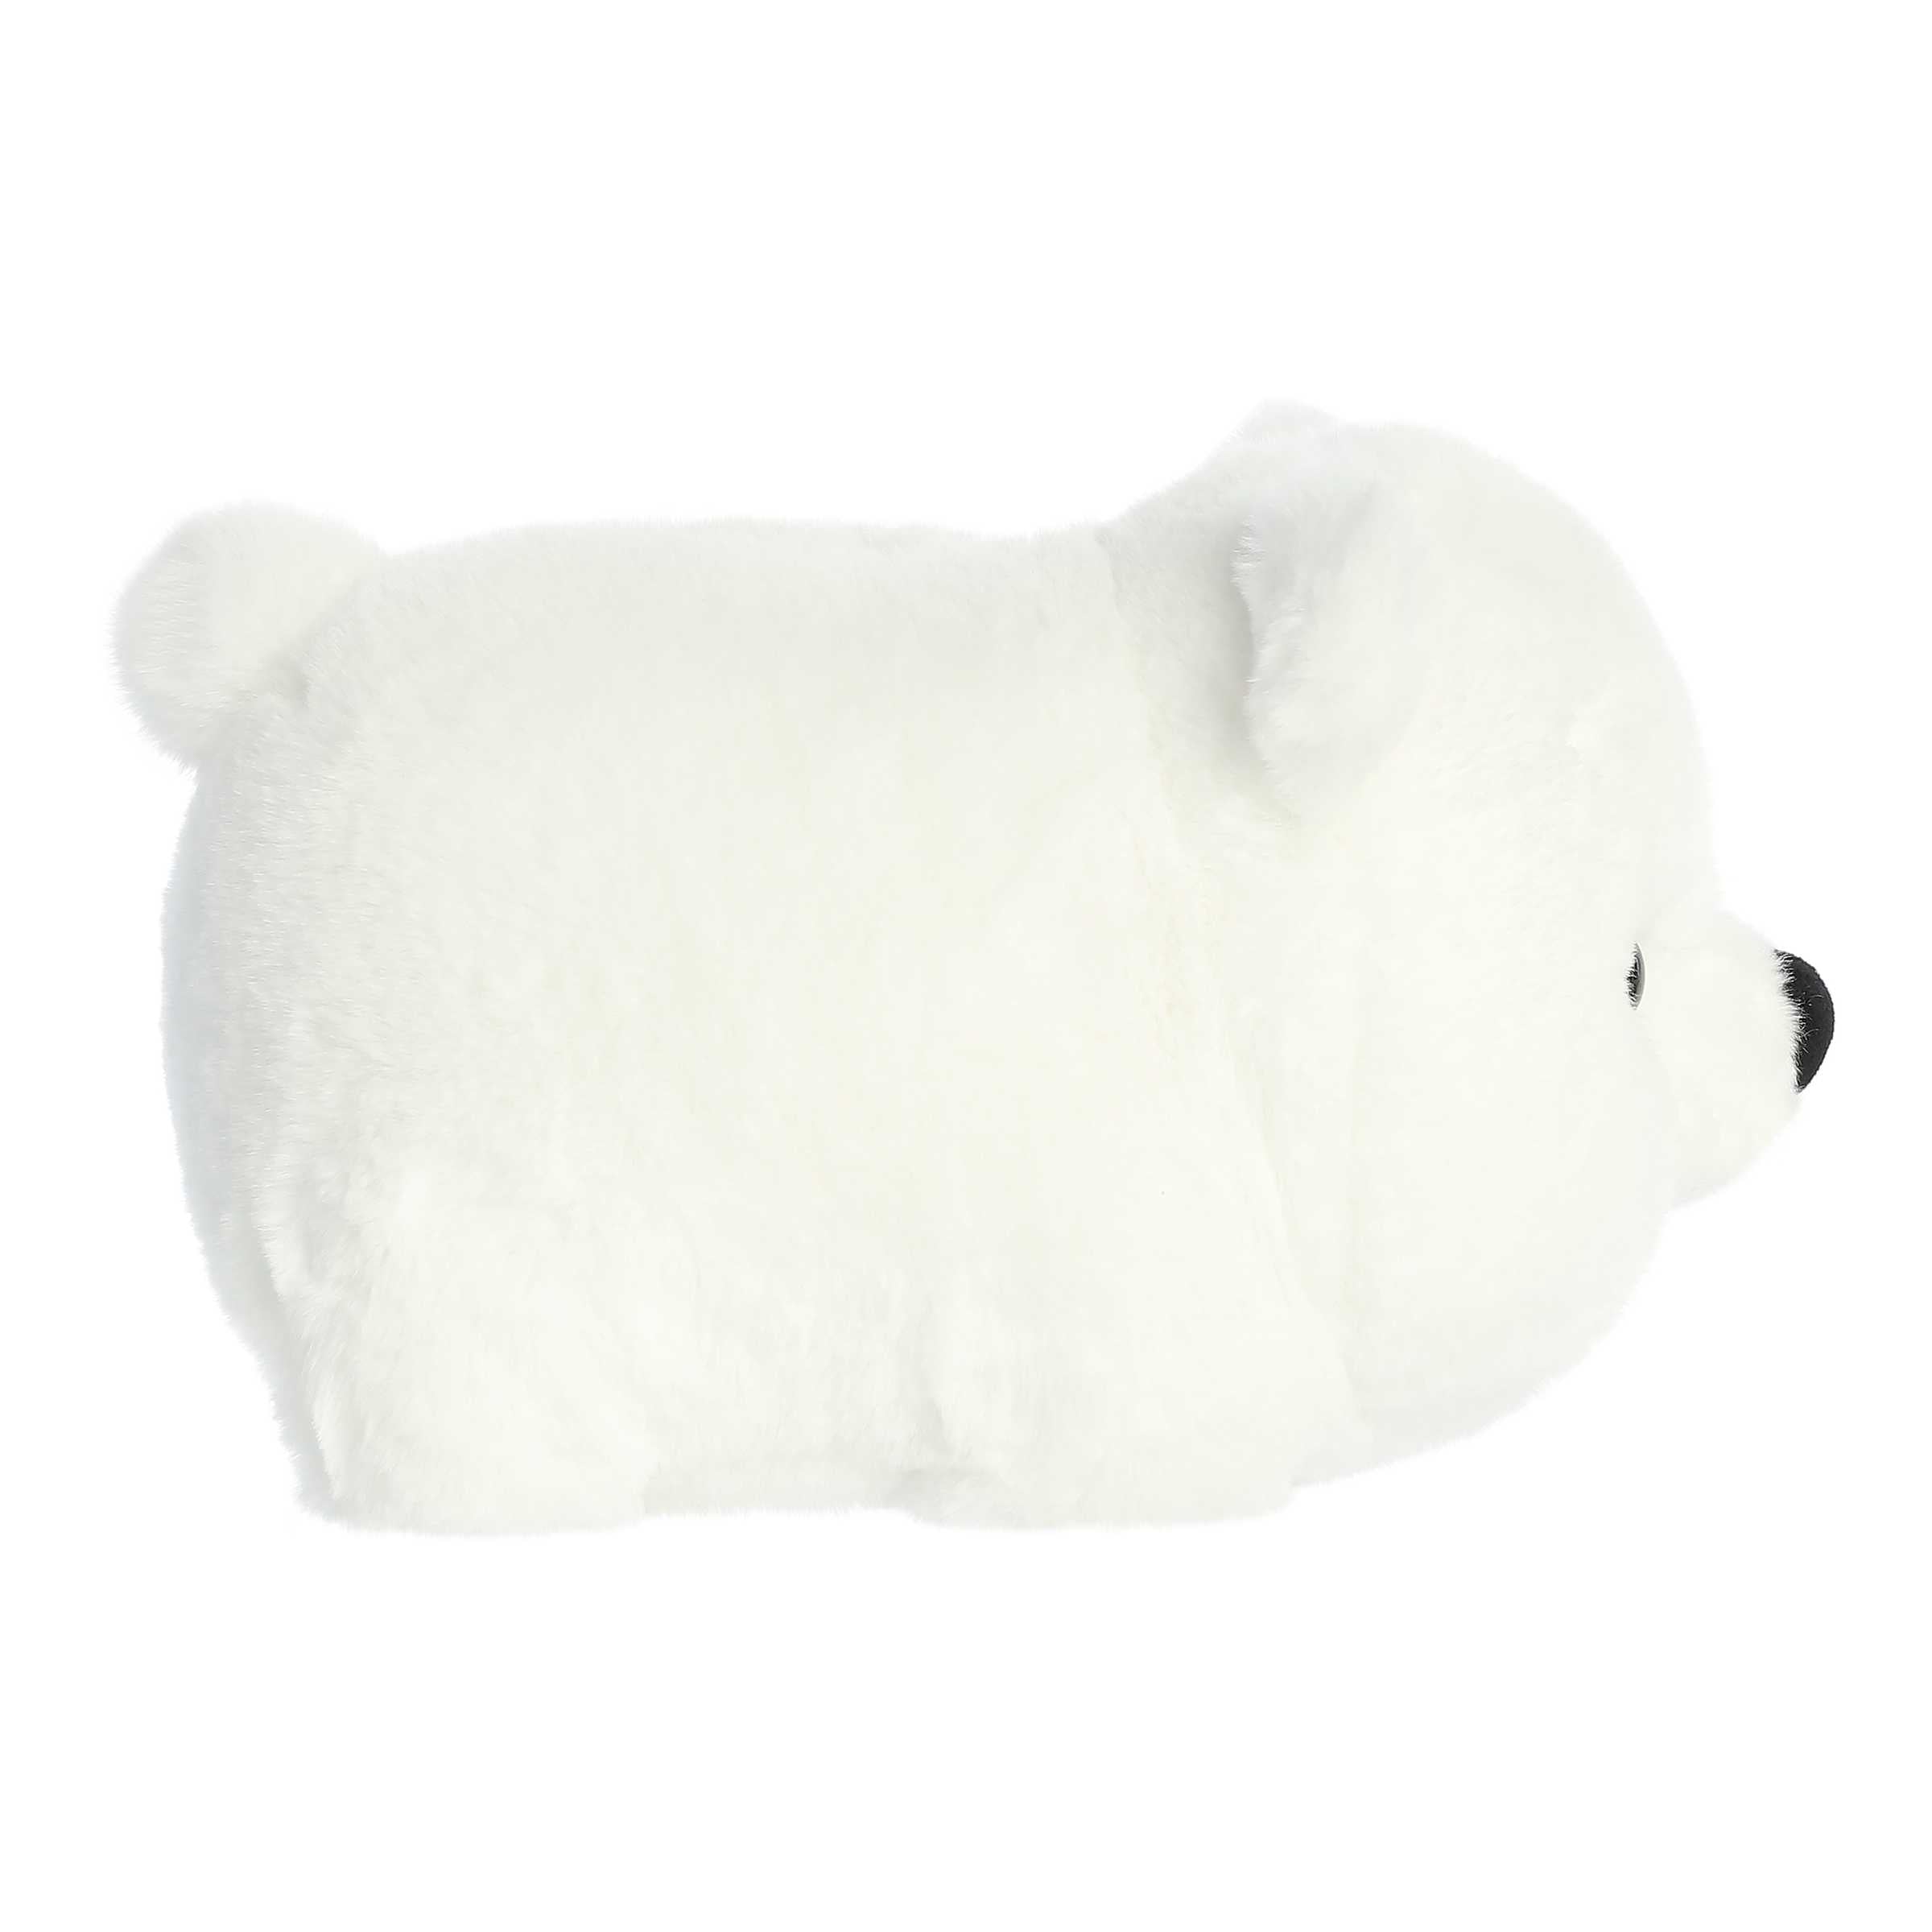 Polar Bear Plush Pillow – Cuddly Potatoes